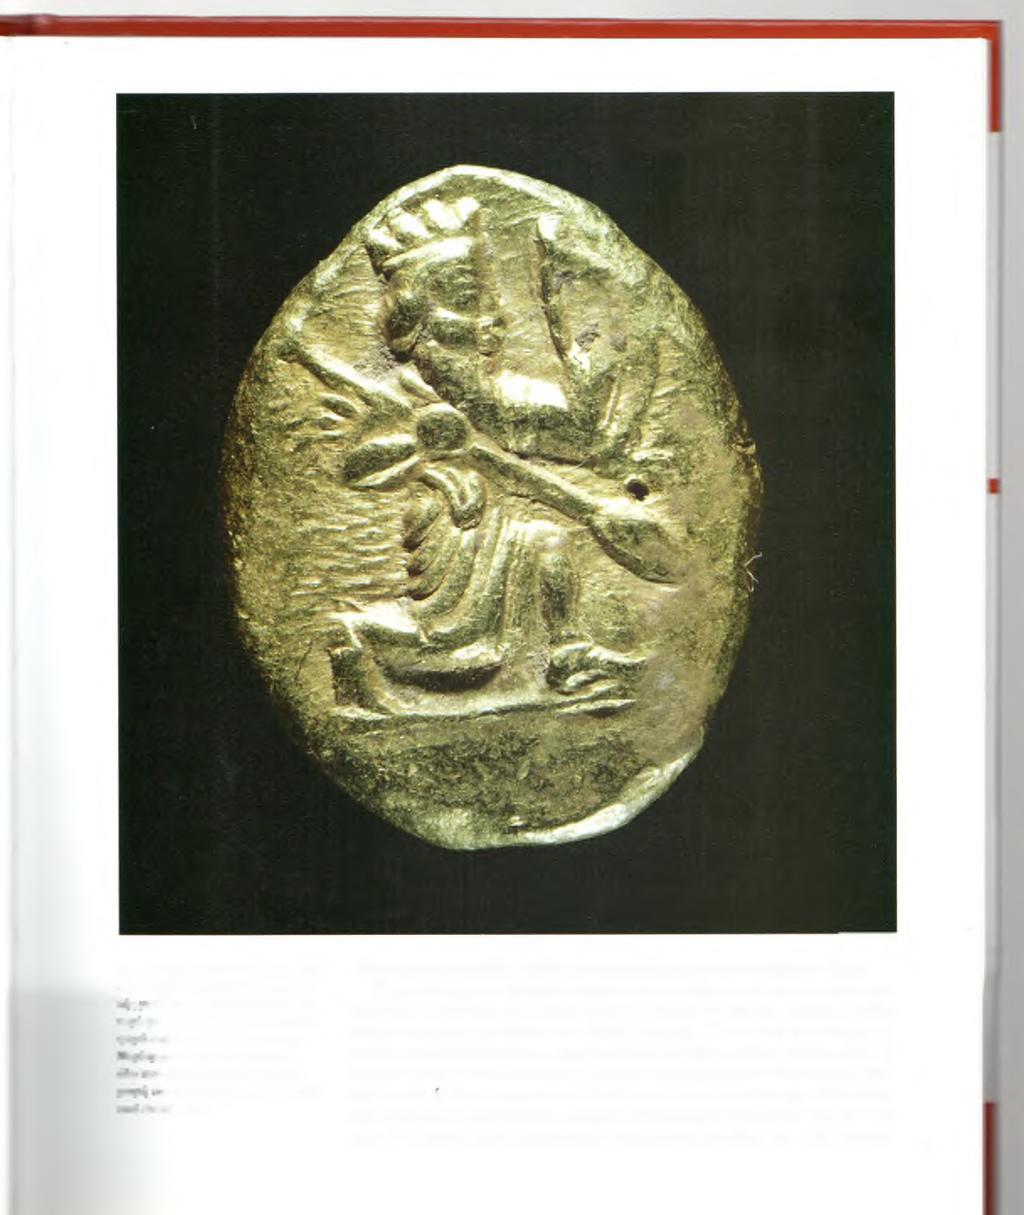 Χρυσός δαρεικός του 5ου αιώνα π.χ. Απεικονίζεται ο βασιλιάς ημιγονυπε- ~~c -ε δόρυ και τόξο. Αυτός ο τύπος ουισρστος κυκλοφόρησε για πρώτη ococ στα τέλη του 6ου αιώνα π.χ. αυουστα χρησιμοποιούνταν σε :mc η ν αρχαίο κόσμο για την πλη- Λιυη των μισθοφόρων.